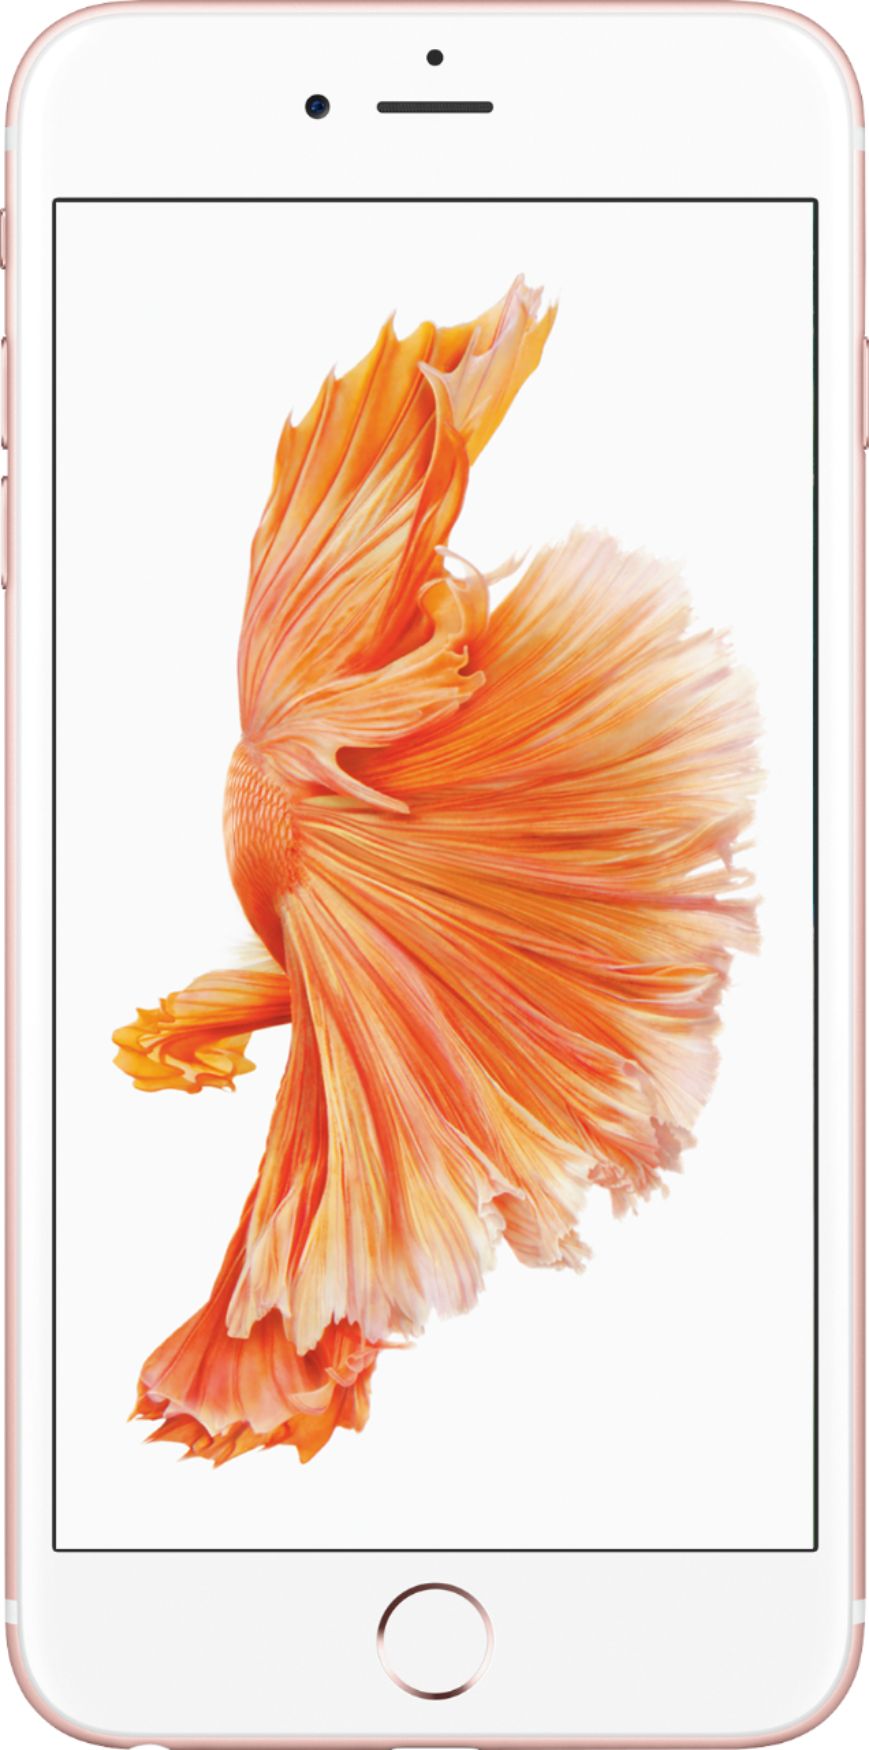 スマートフォン/携帯電話 スマートフォン本体 Best Buy: Apple iPhone 6s Plus 128GB Rose Gold (AT&T) MKWJ2LL/A